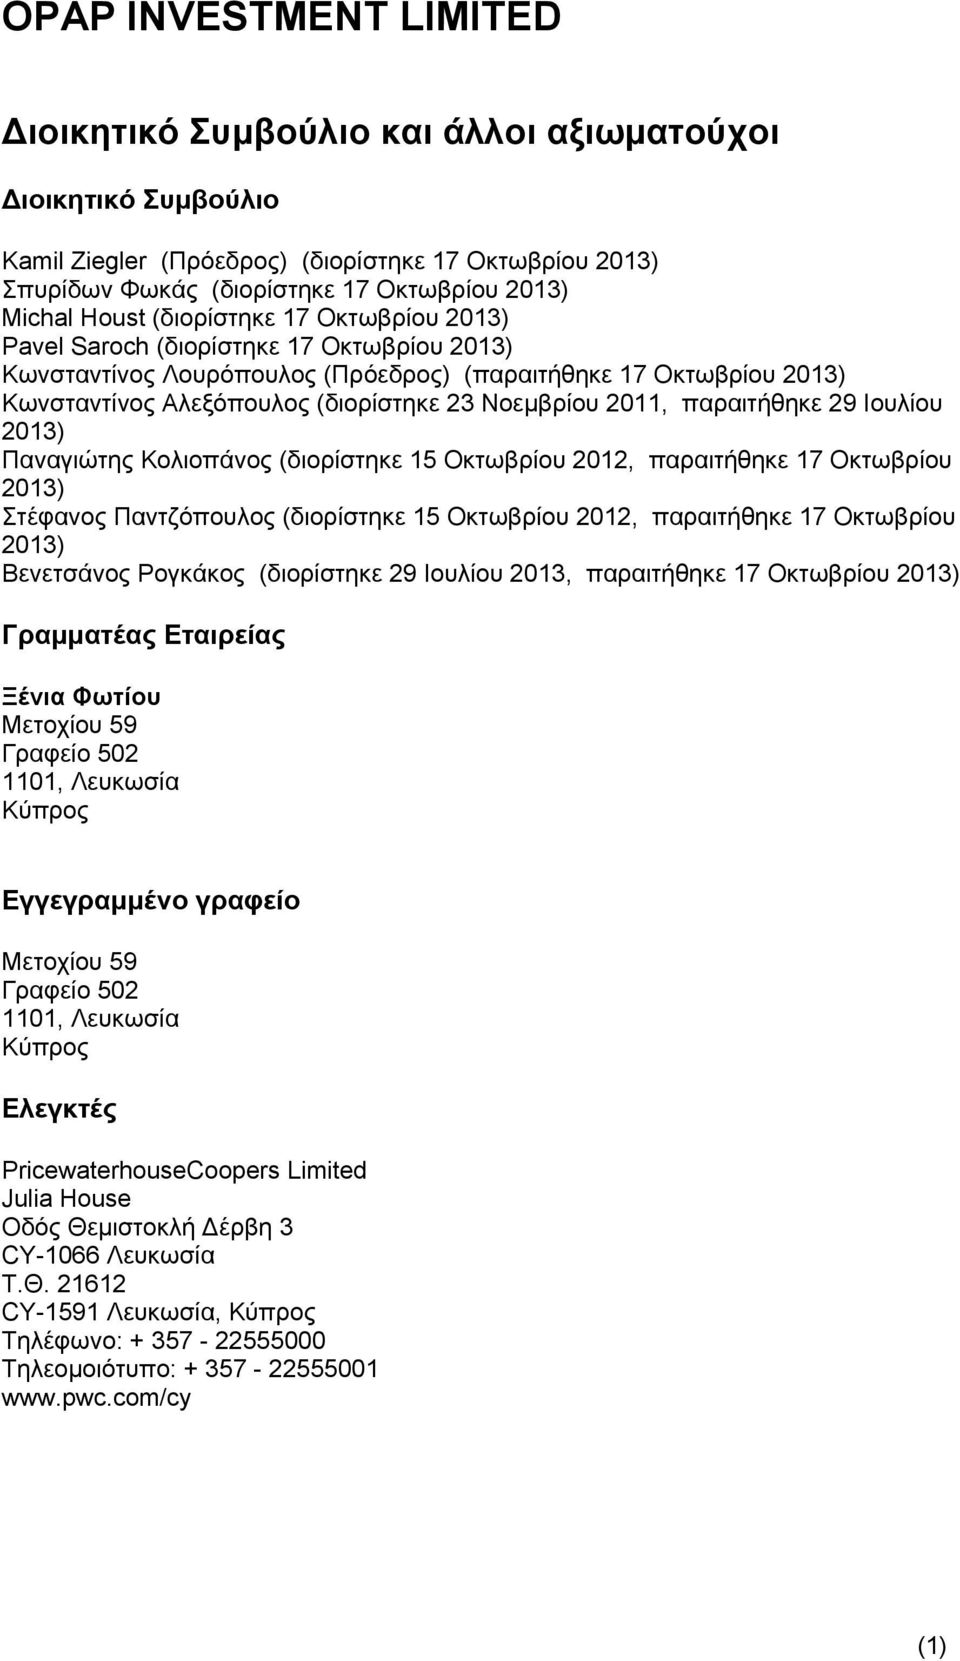 Ιουλίου 2013) Παναγιώτης Κολιοπάνος (διορίστηκε 15 Οκτωβρίου 2012, παραιτήθηκε 17 Οκτωβρίου 2013) Στέφανος Παντζόπουλος (διορίστηκε 15 Οκτωβρίου 2012, παραιτήθηκε 17 Οκτωβρίου 2013) Βενετσάνος